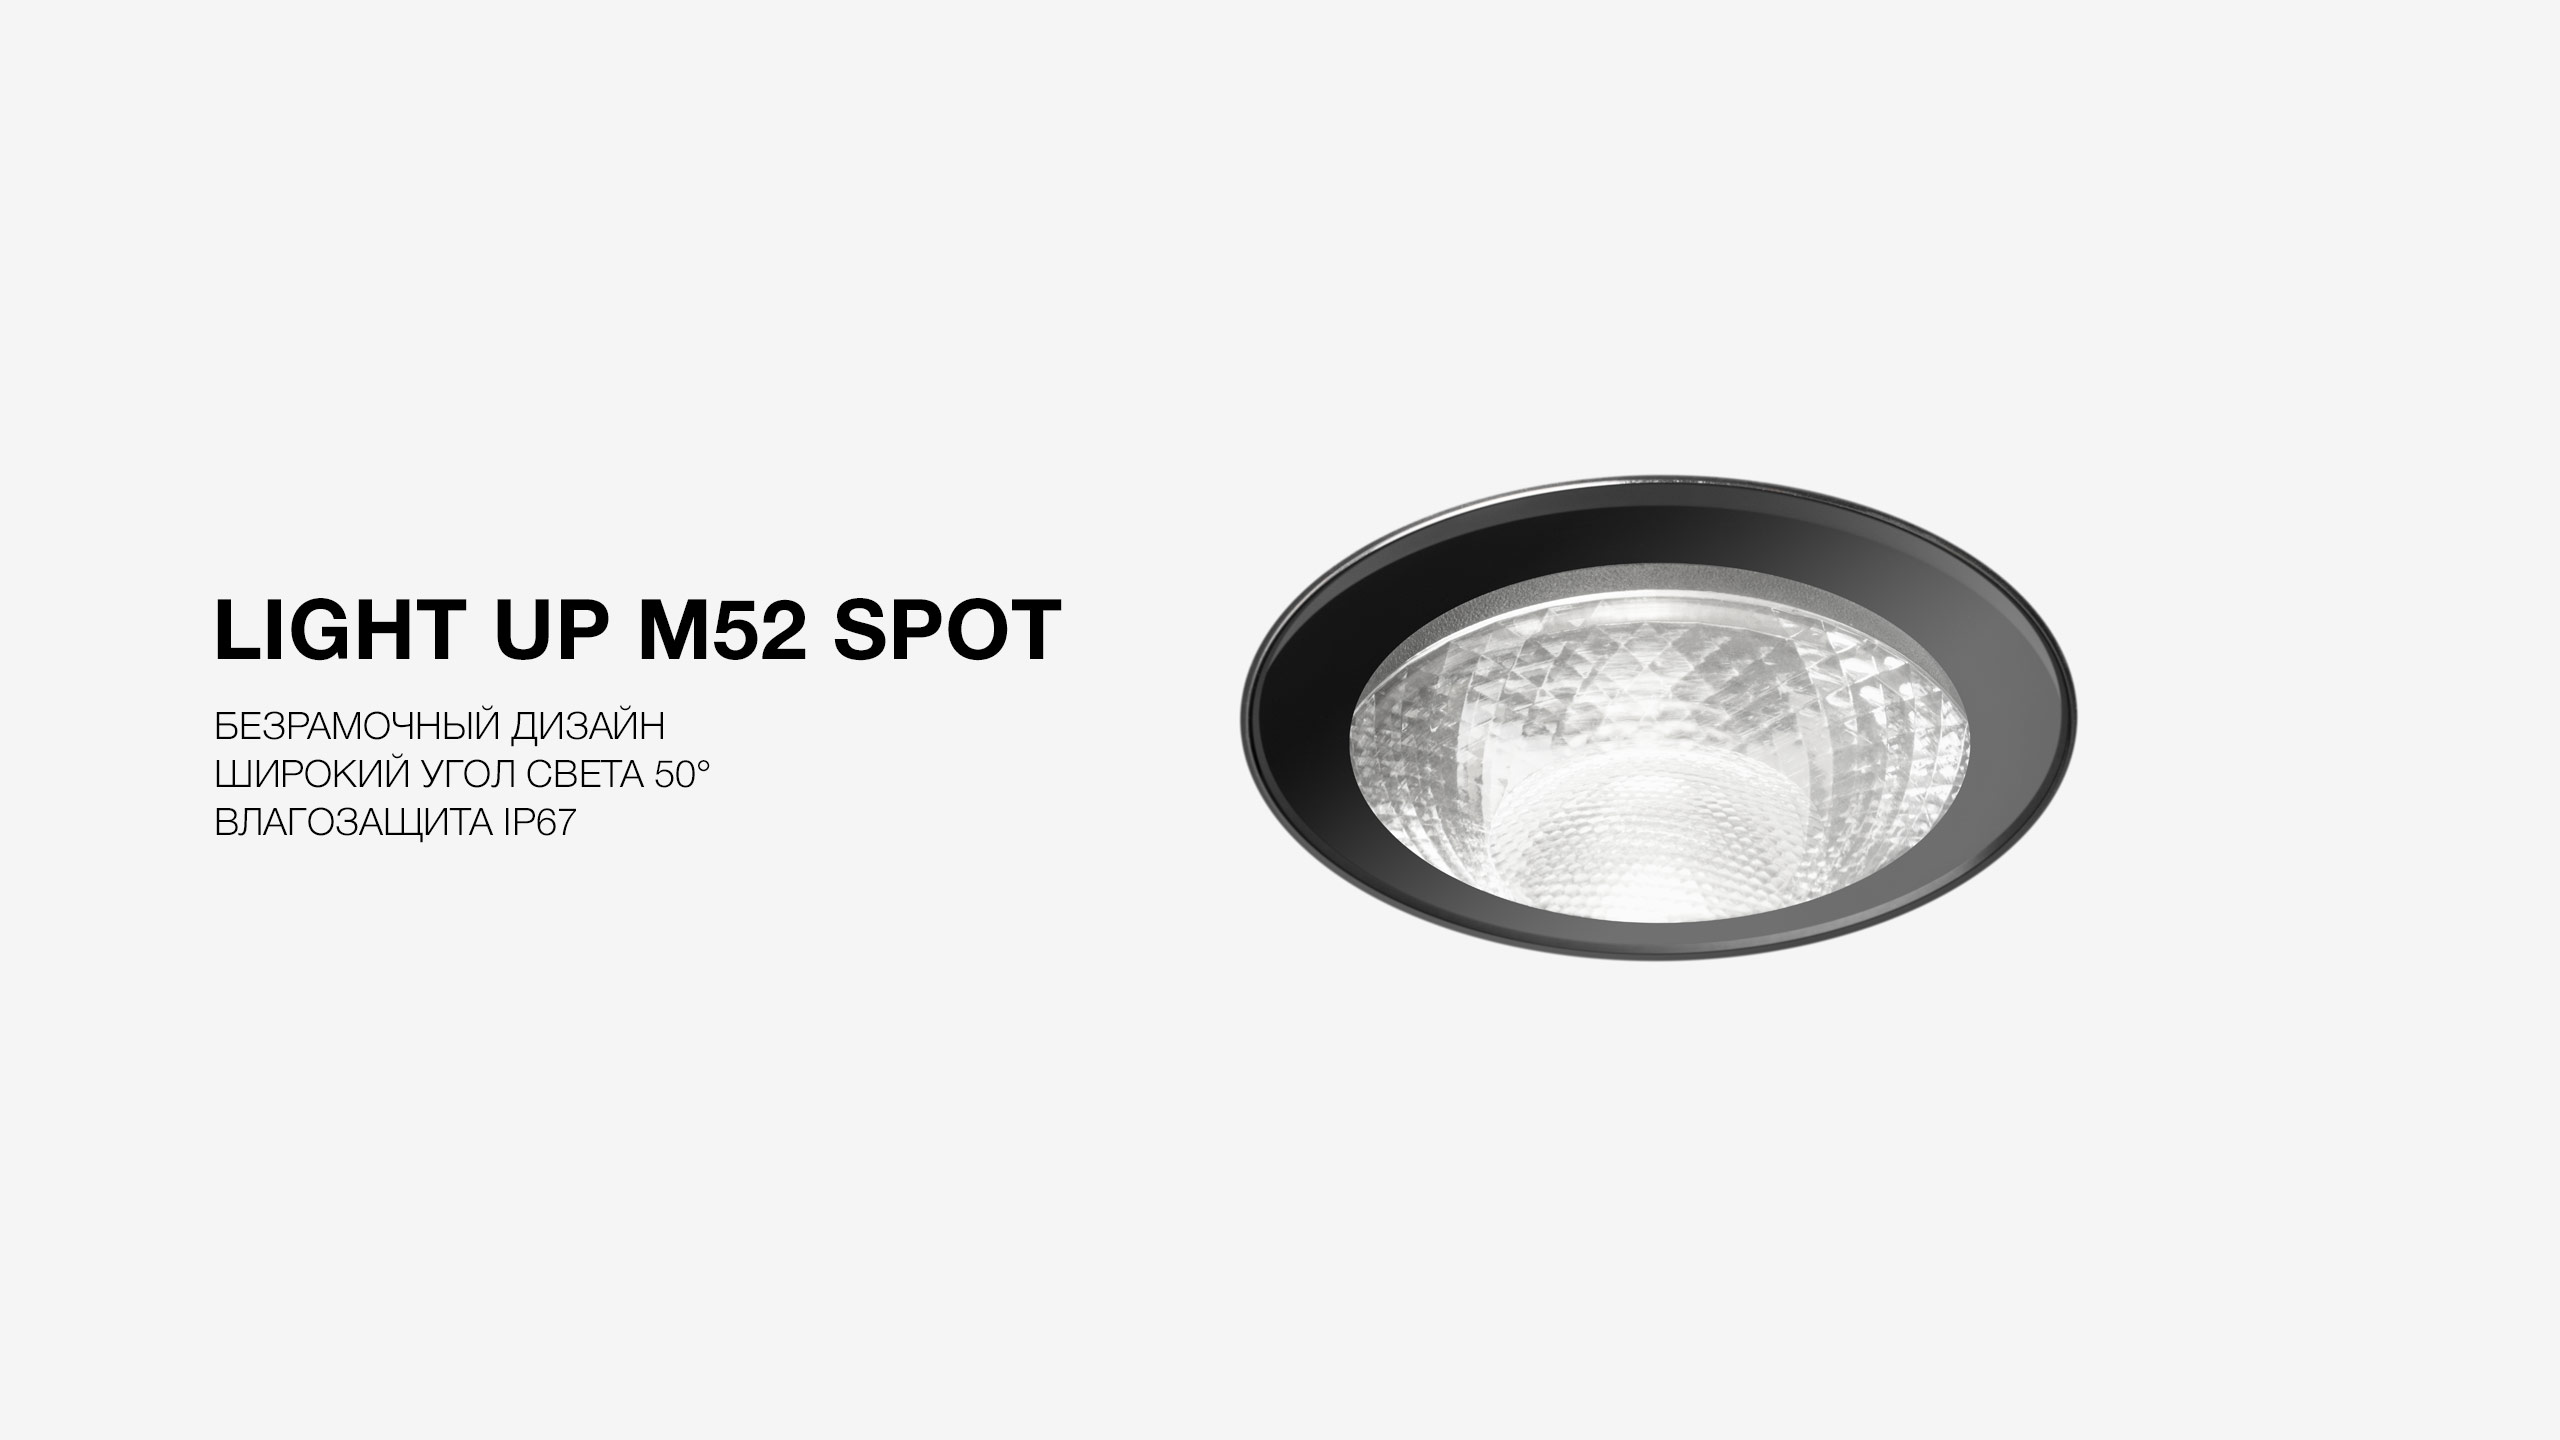 LIGHT UP M52 SPOT